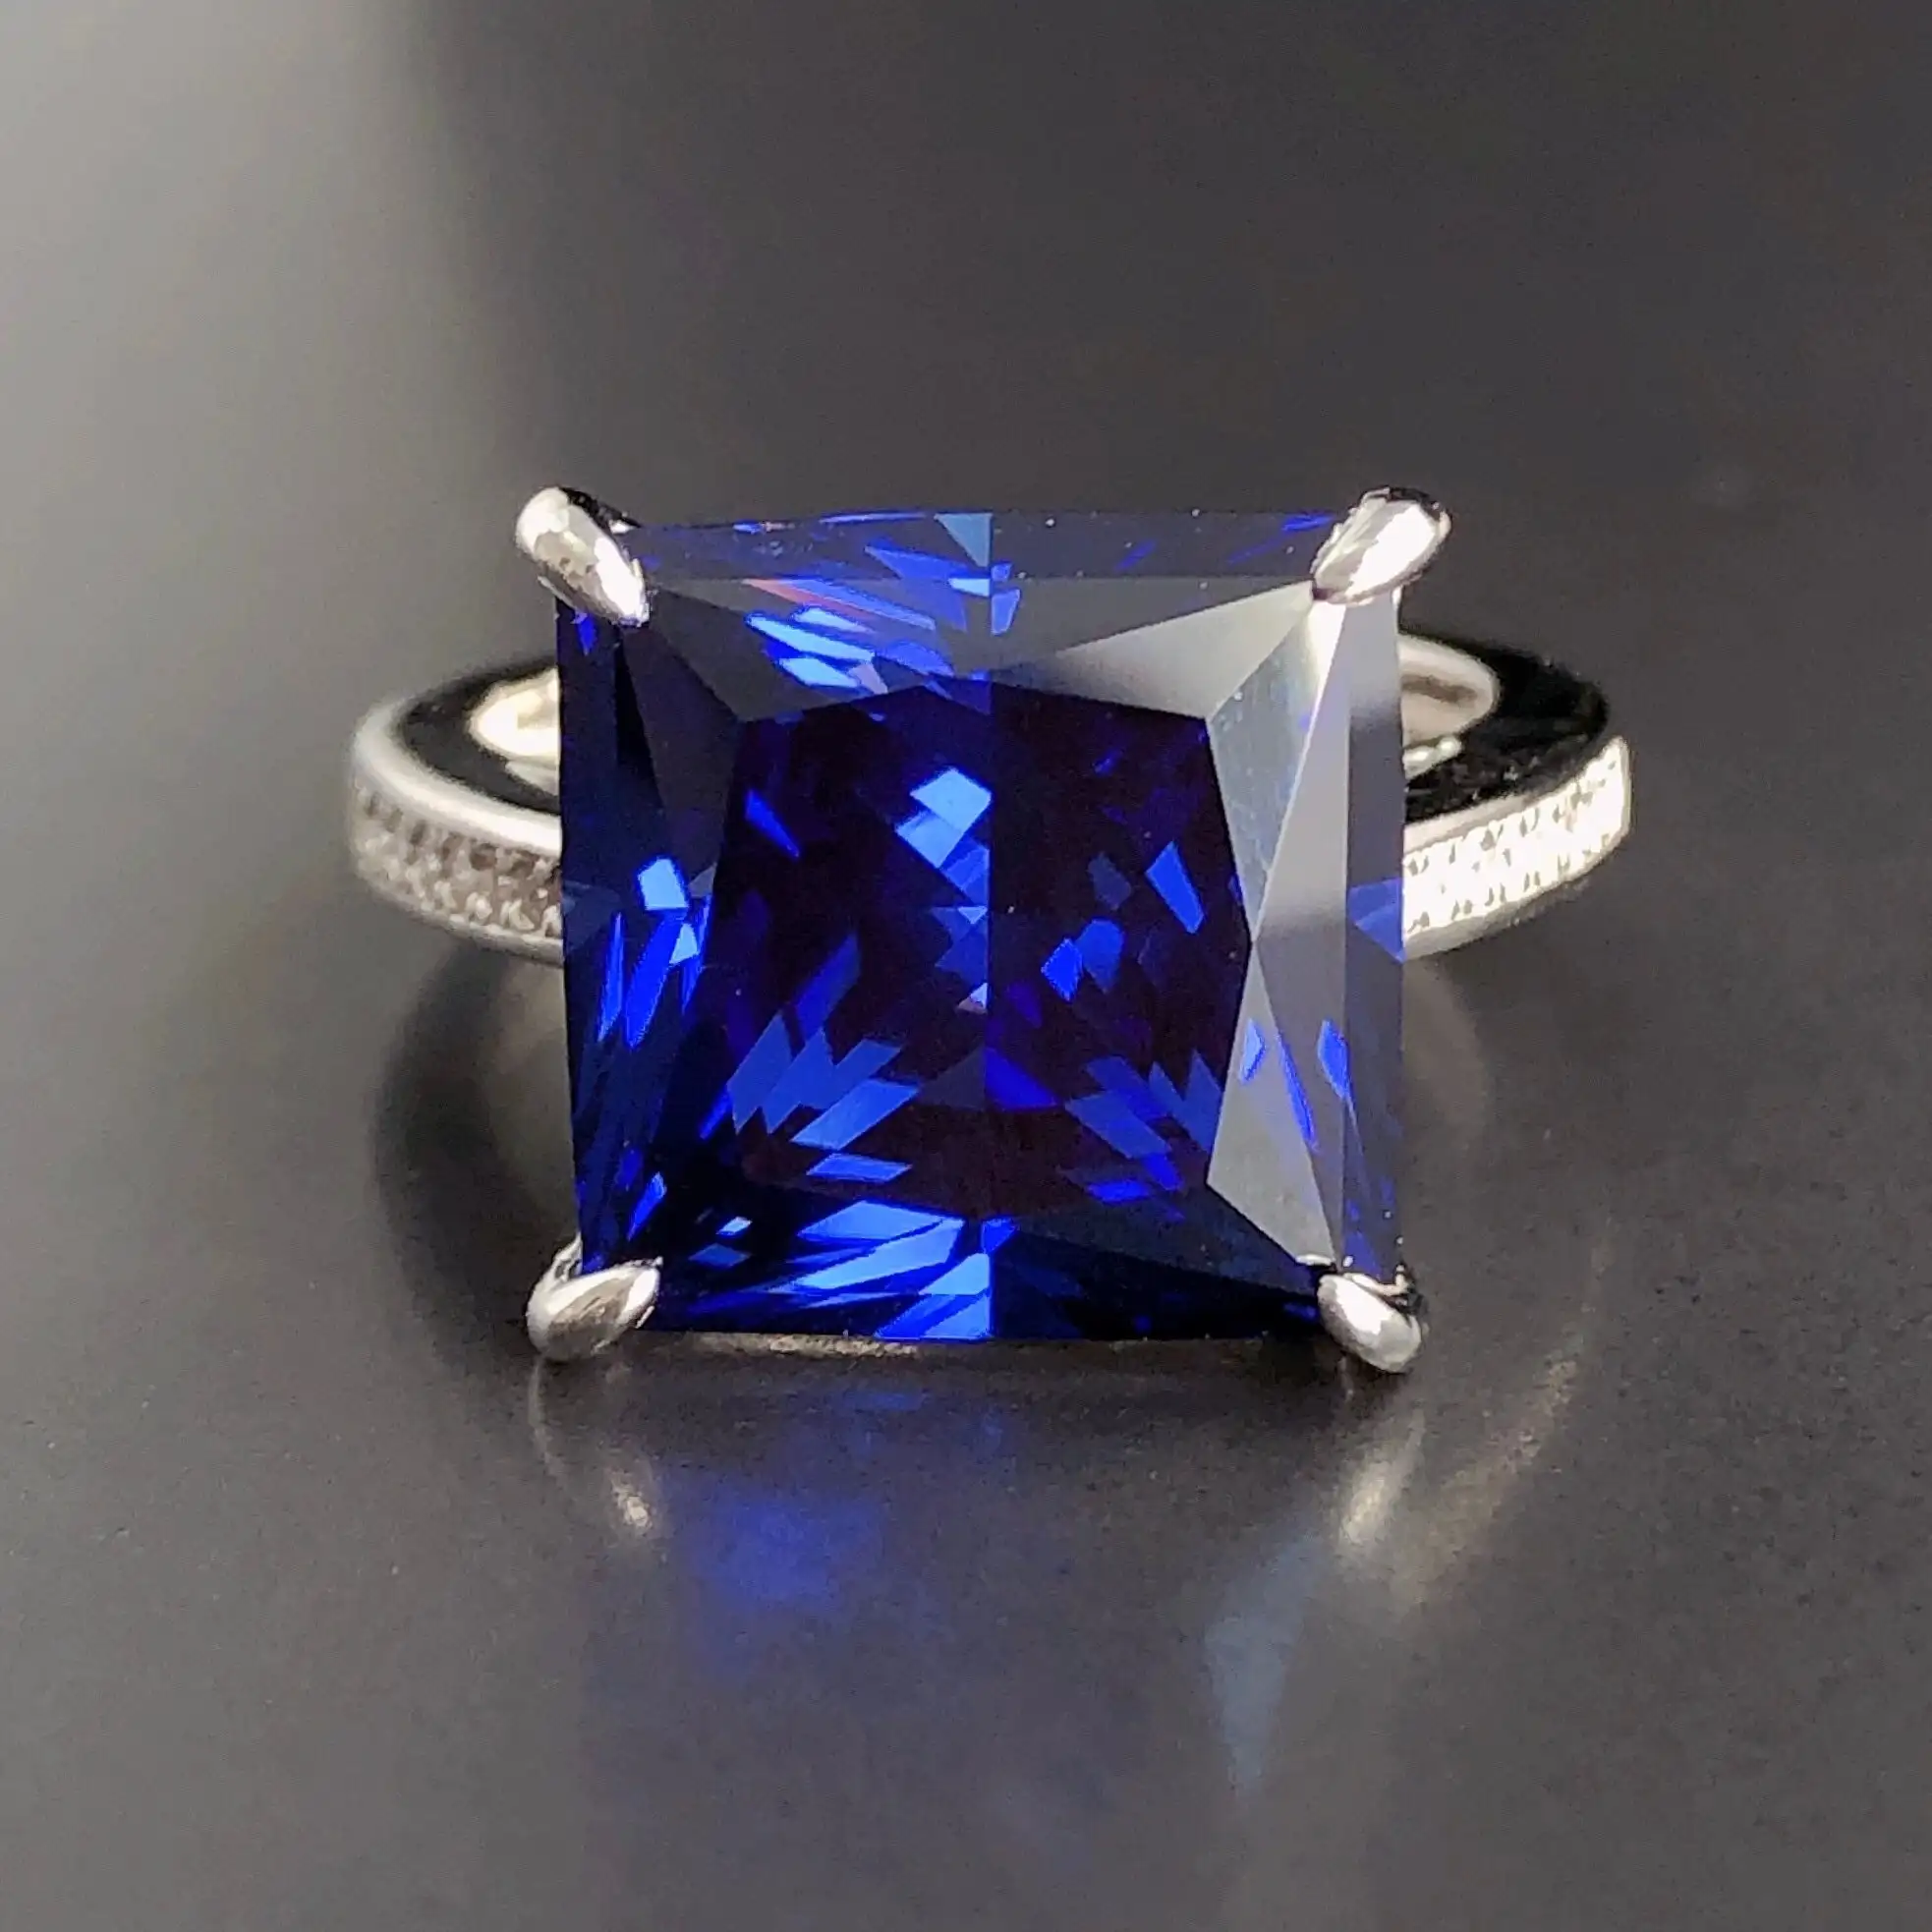 Anello zaffiro blu coltivato in laboratorio da principessa tagliato 925 anello di dichiarazione in argento Sterling anello di nozze e speciale regalo di compleanno per donna.